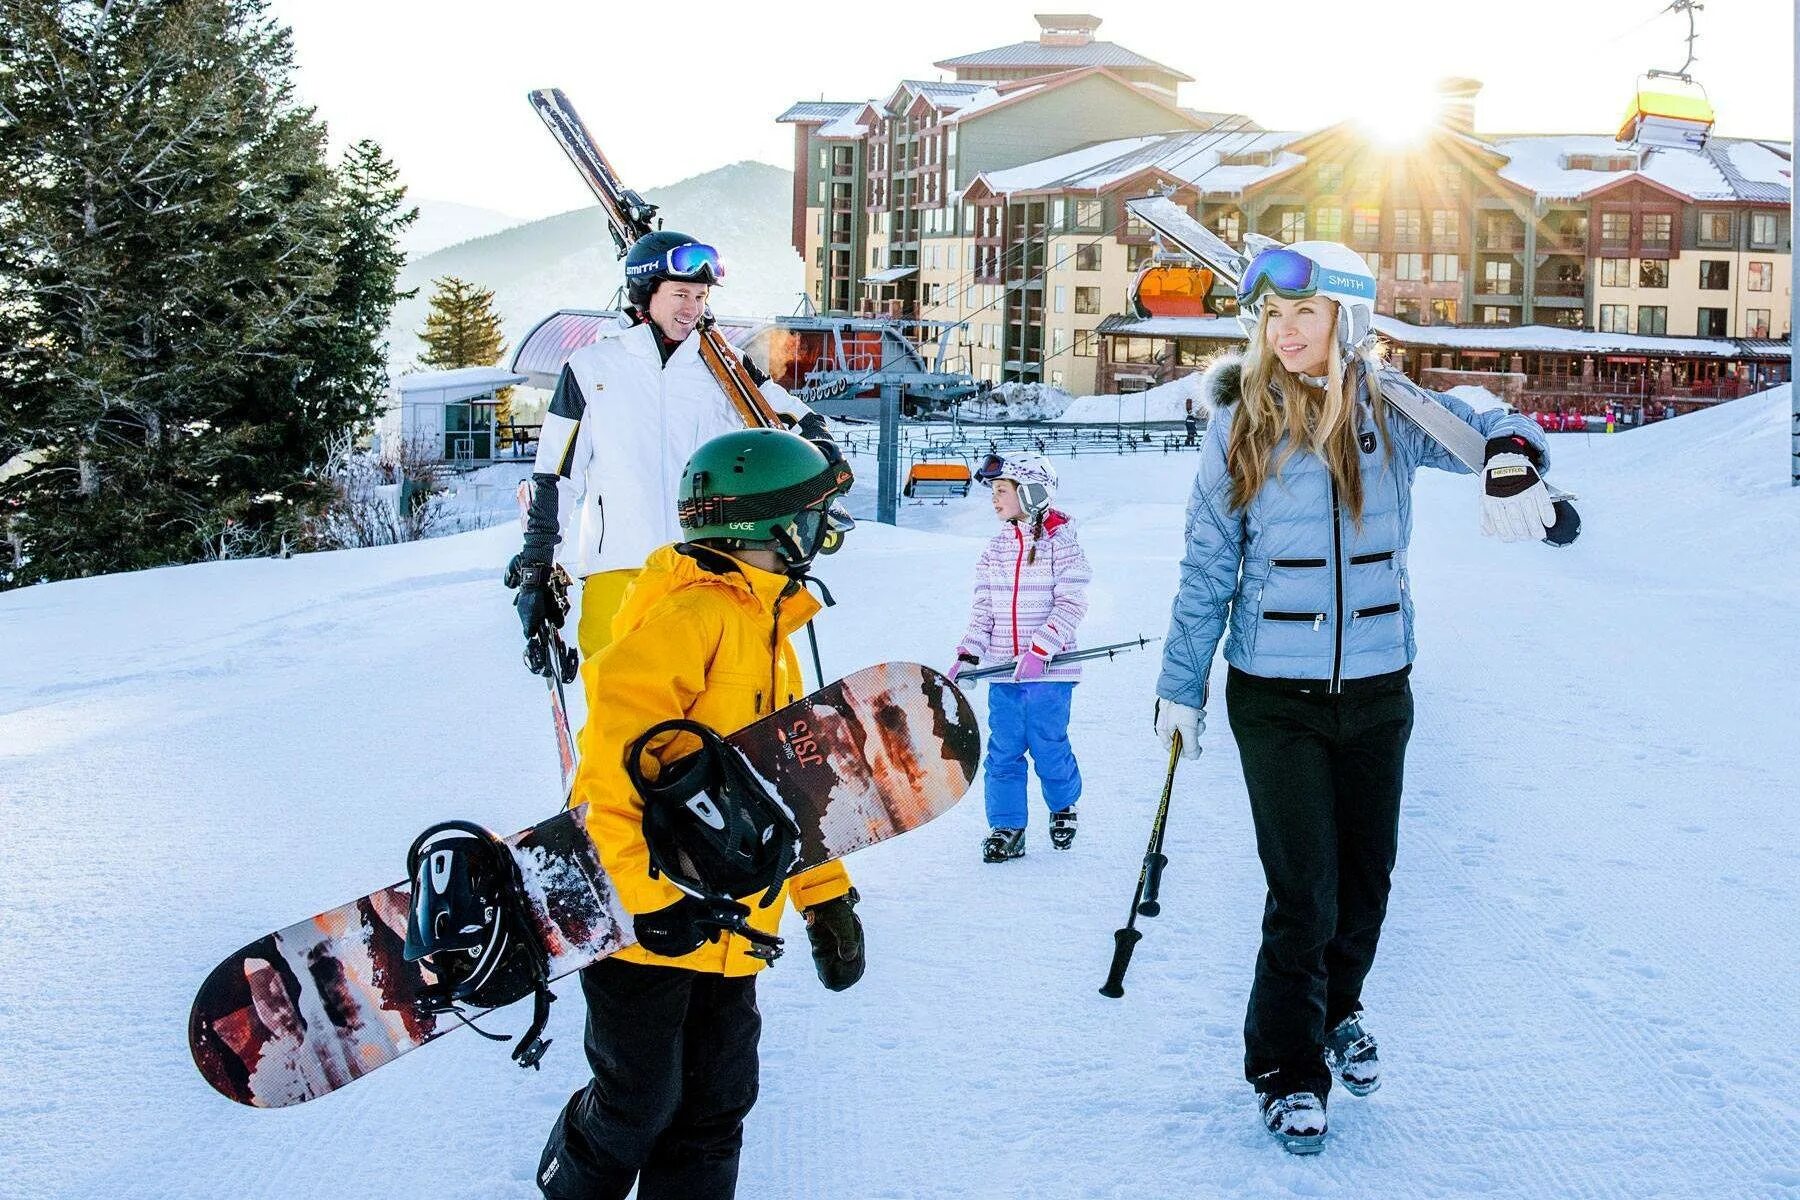 Семья на горнолыжном курорте. Зимний отдых. Семья на сноубордах. Кататься на лыжах и сноуборде. Покататься на горнолыжном курорте